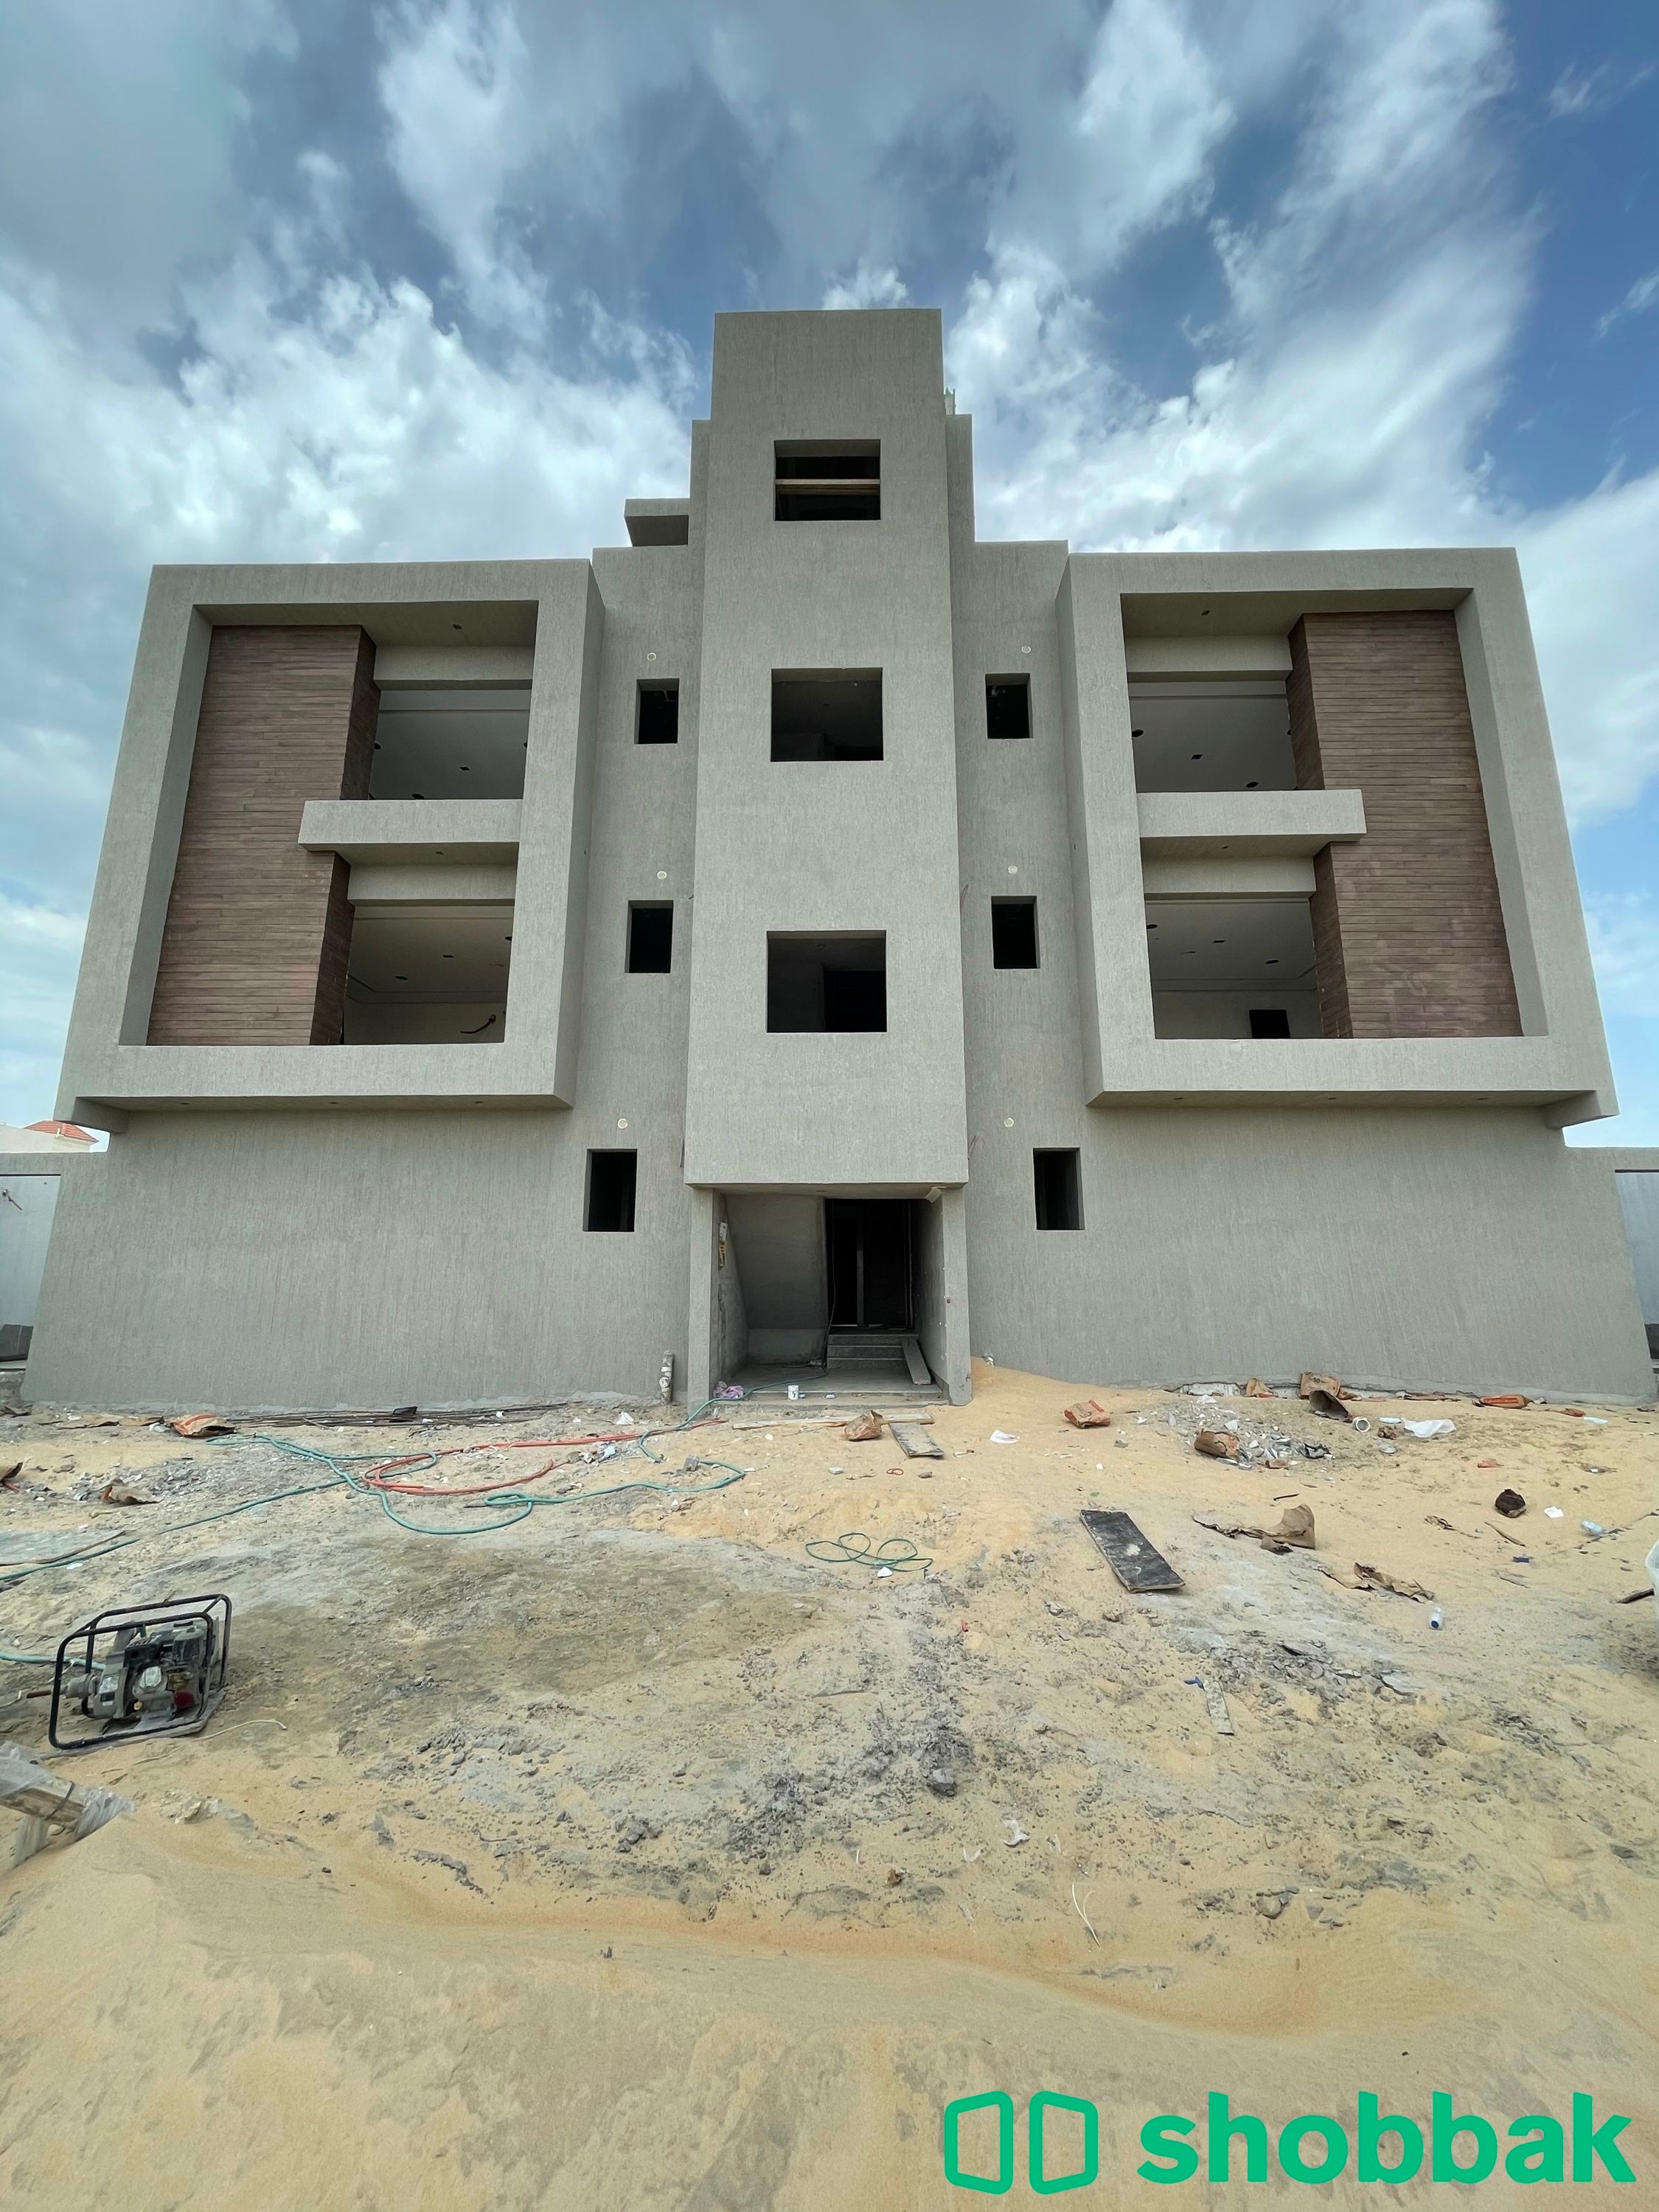 عمارة رقم (1) شقة رقم (6) للبيع بحي الجوهرة-الدمام. Shobbak Saudi Arabia